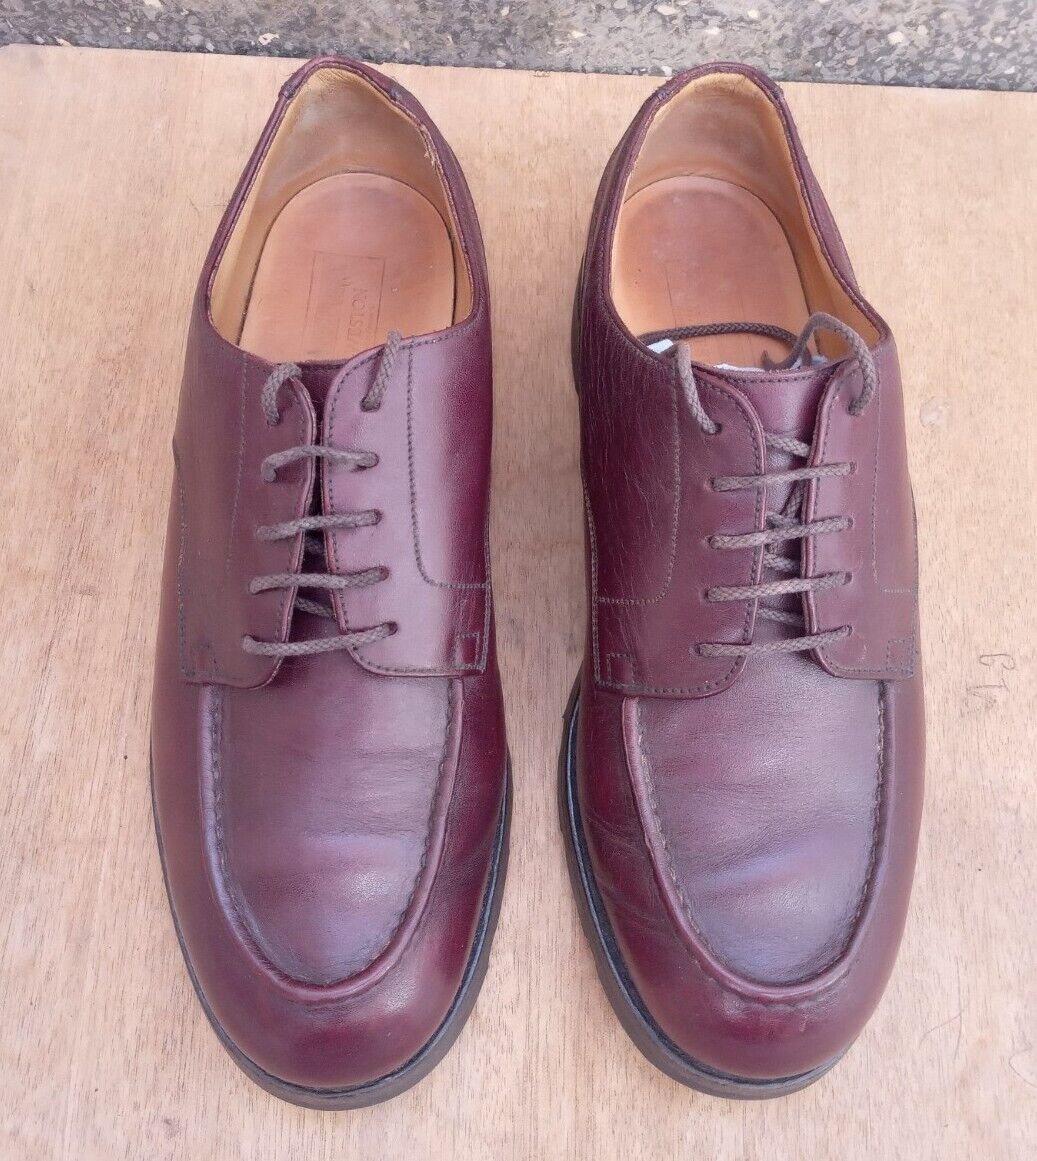 JM Weston Manufacture Men Derby Golf Leather Shoes size 6E / 7US